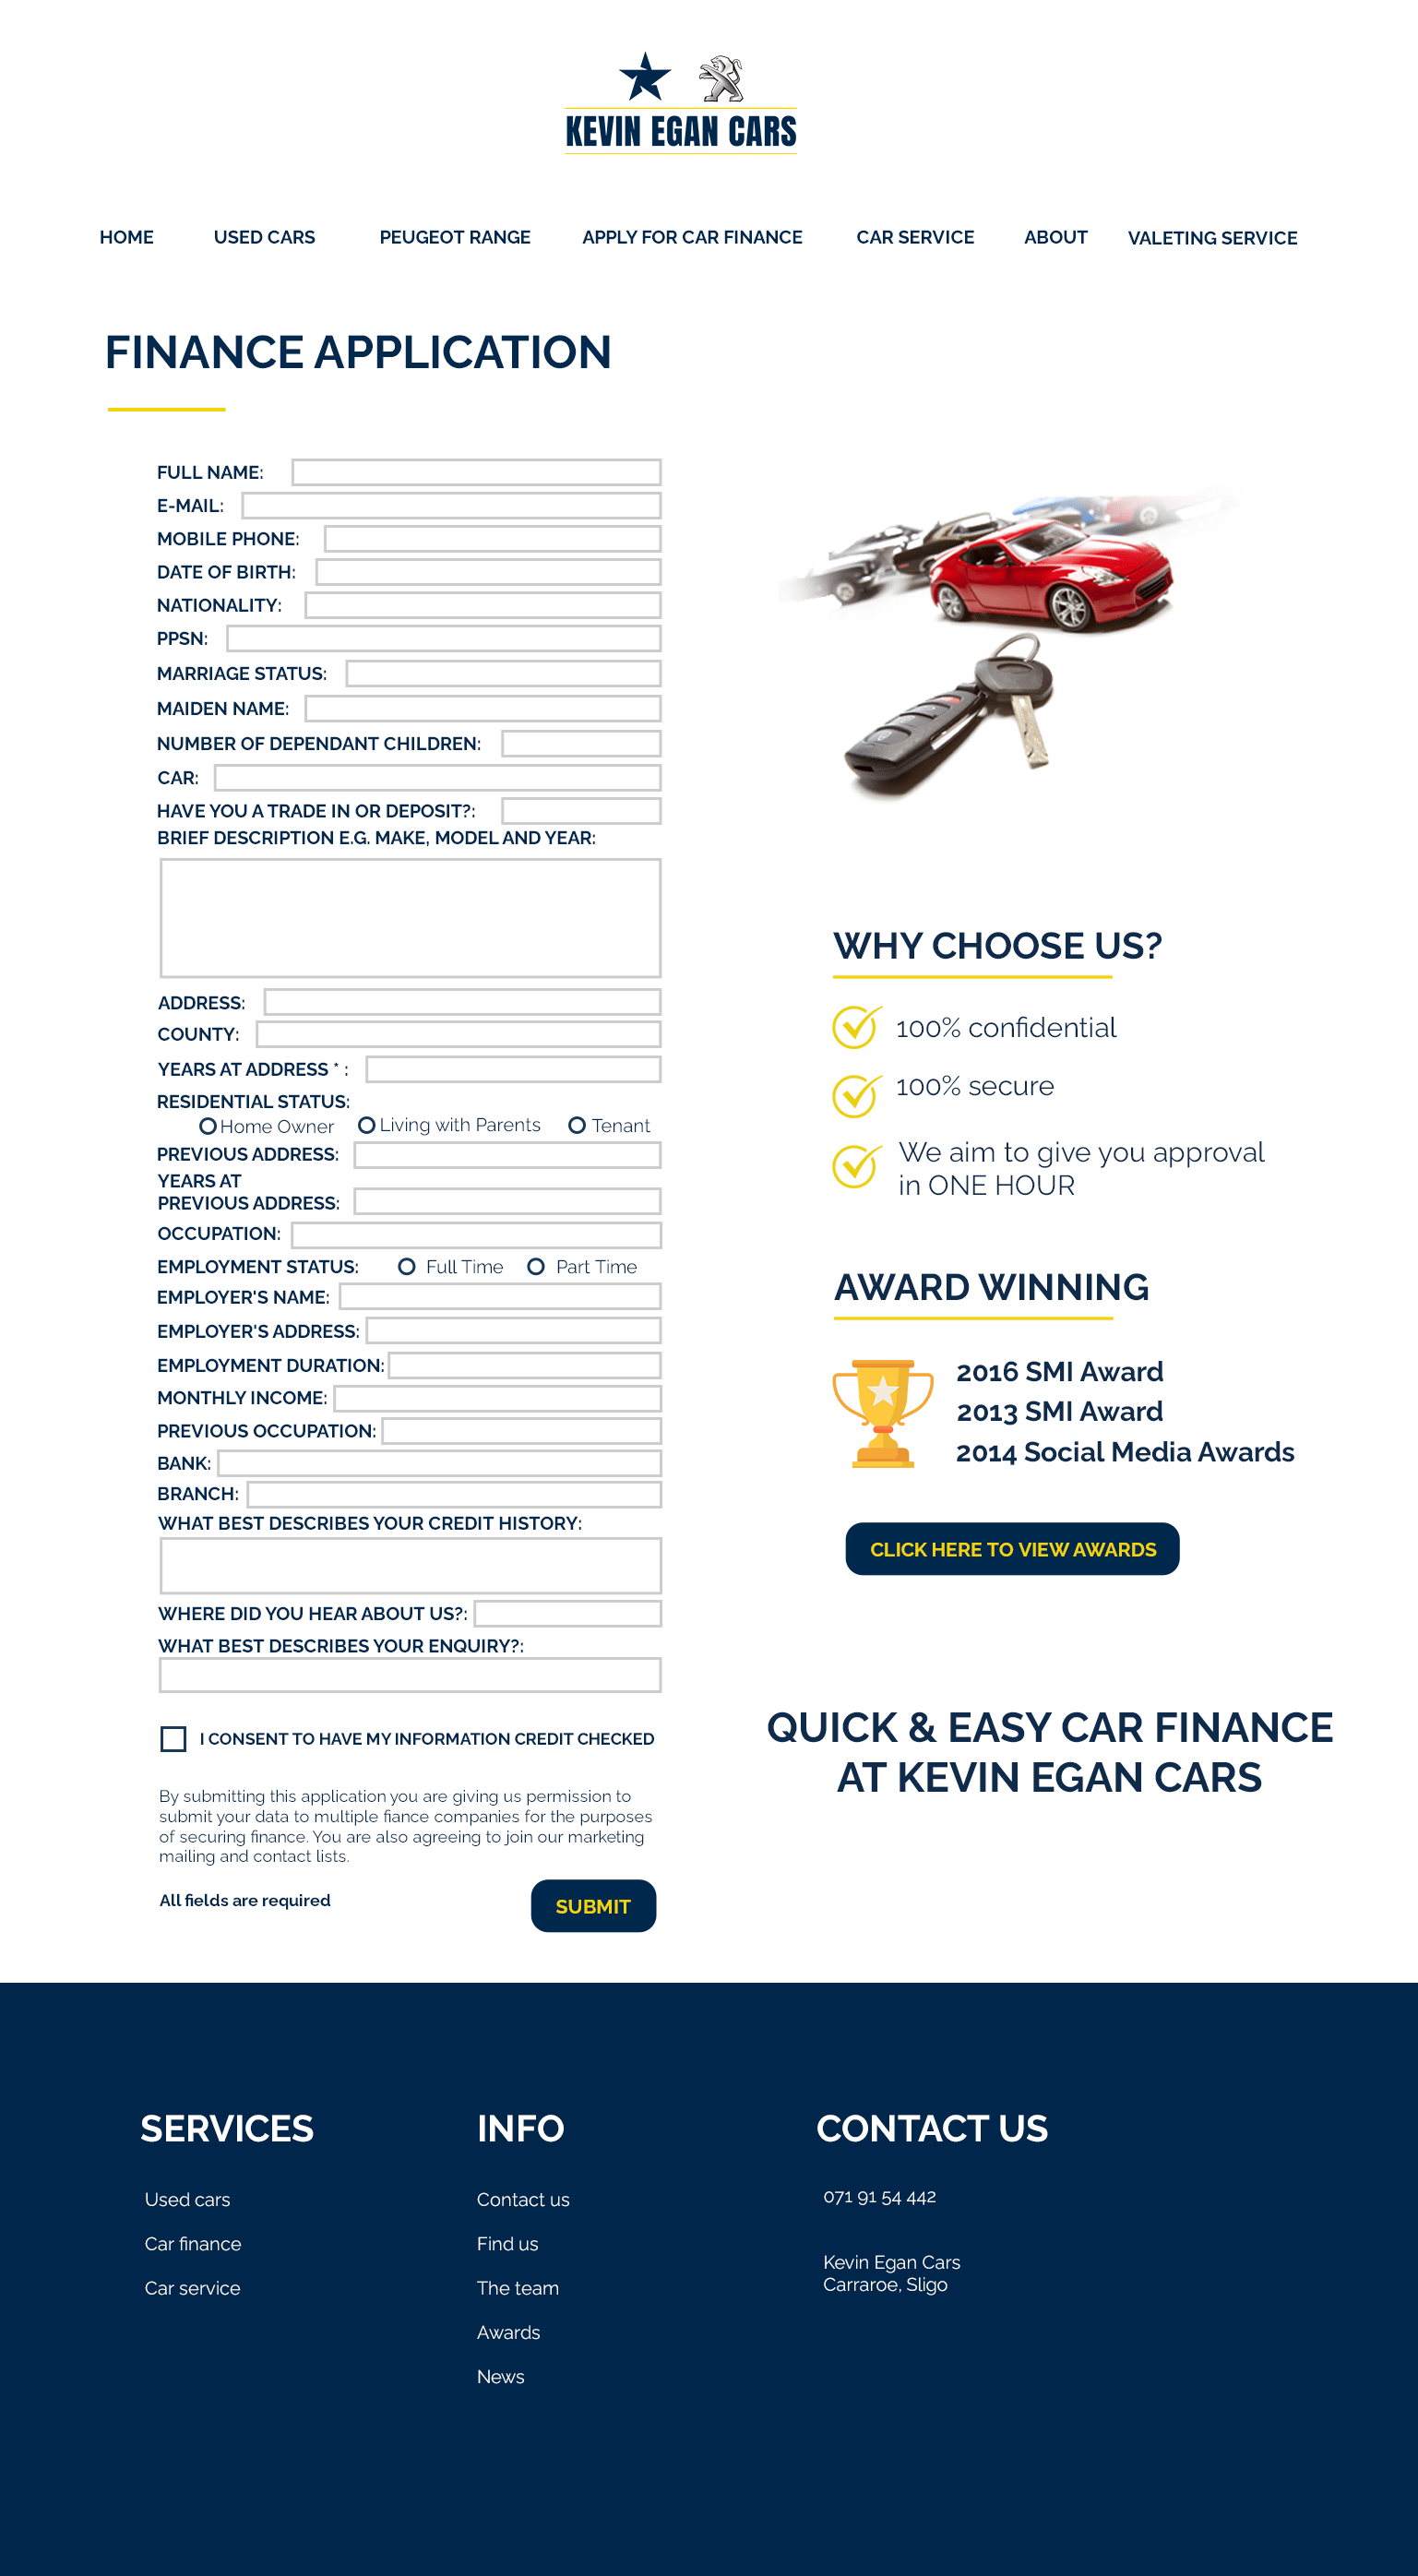 APPLY-FOR-CAR-FINANCE